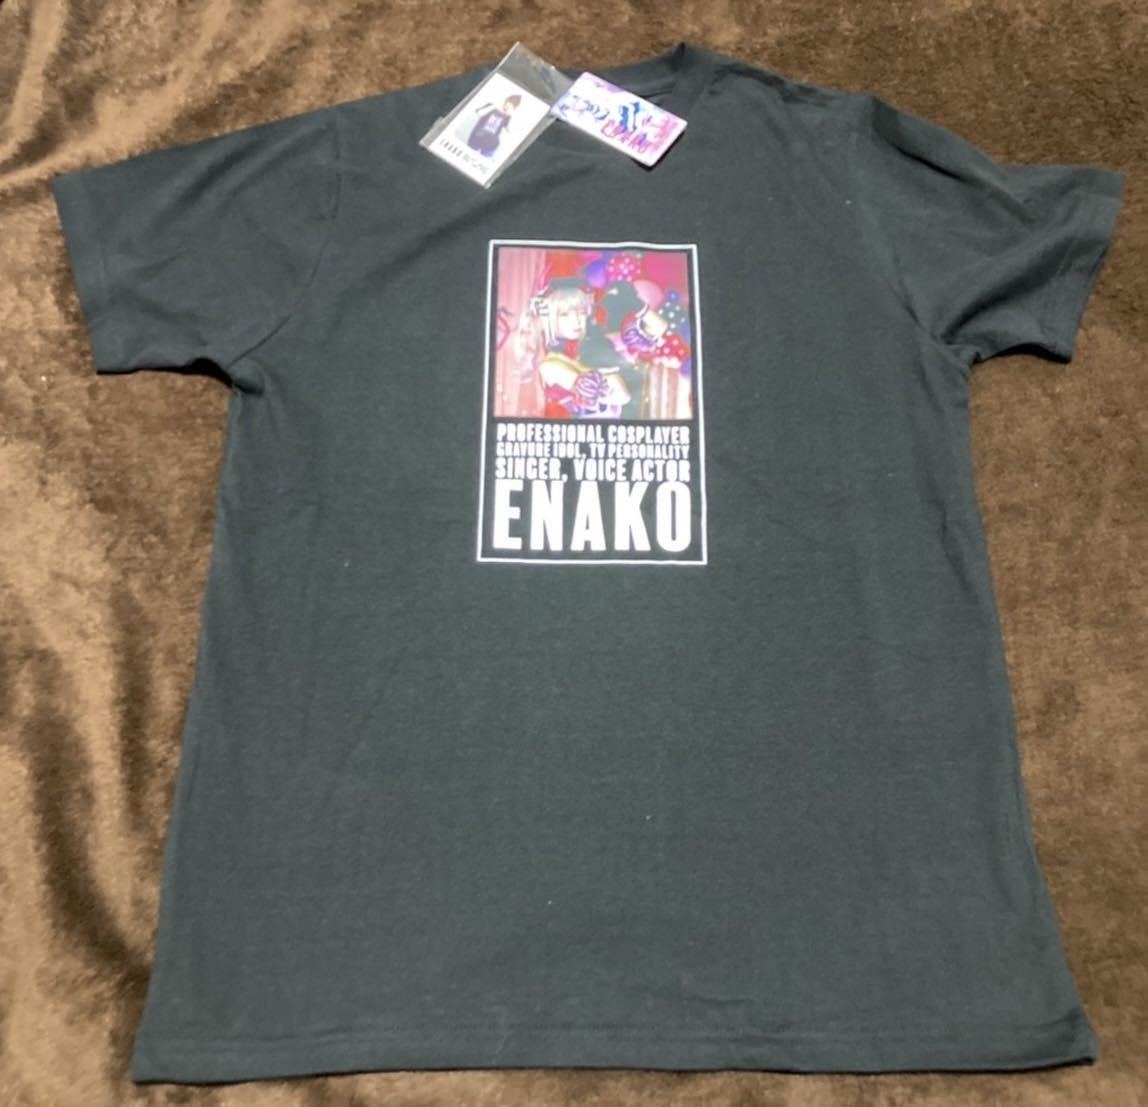 【Lサイズ】新品 えなこ Tシャツ メンズ しまむら コラボ ポラロイド柄ステッカー付き コスプレイヤー エナコ b_画像2